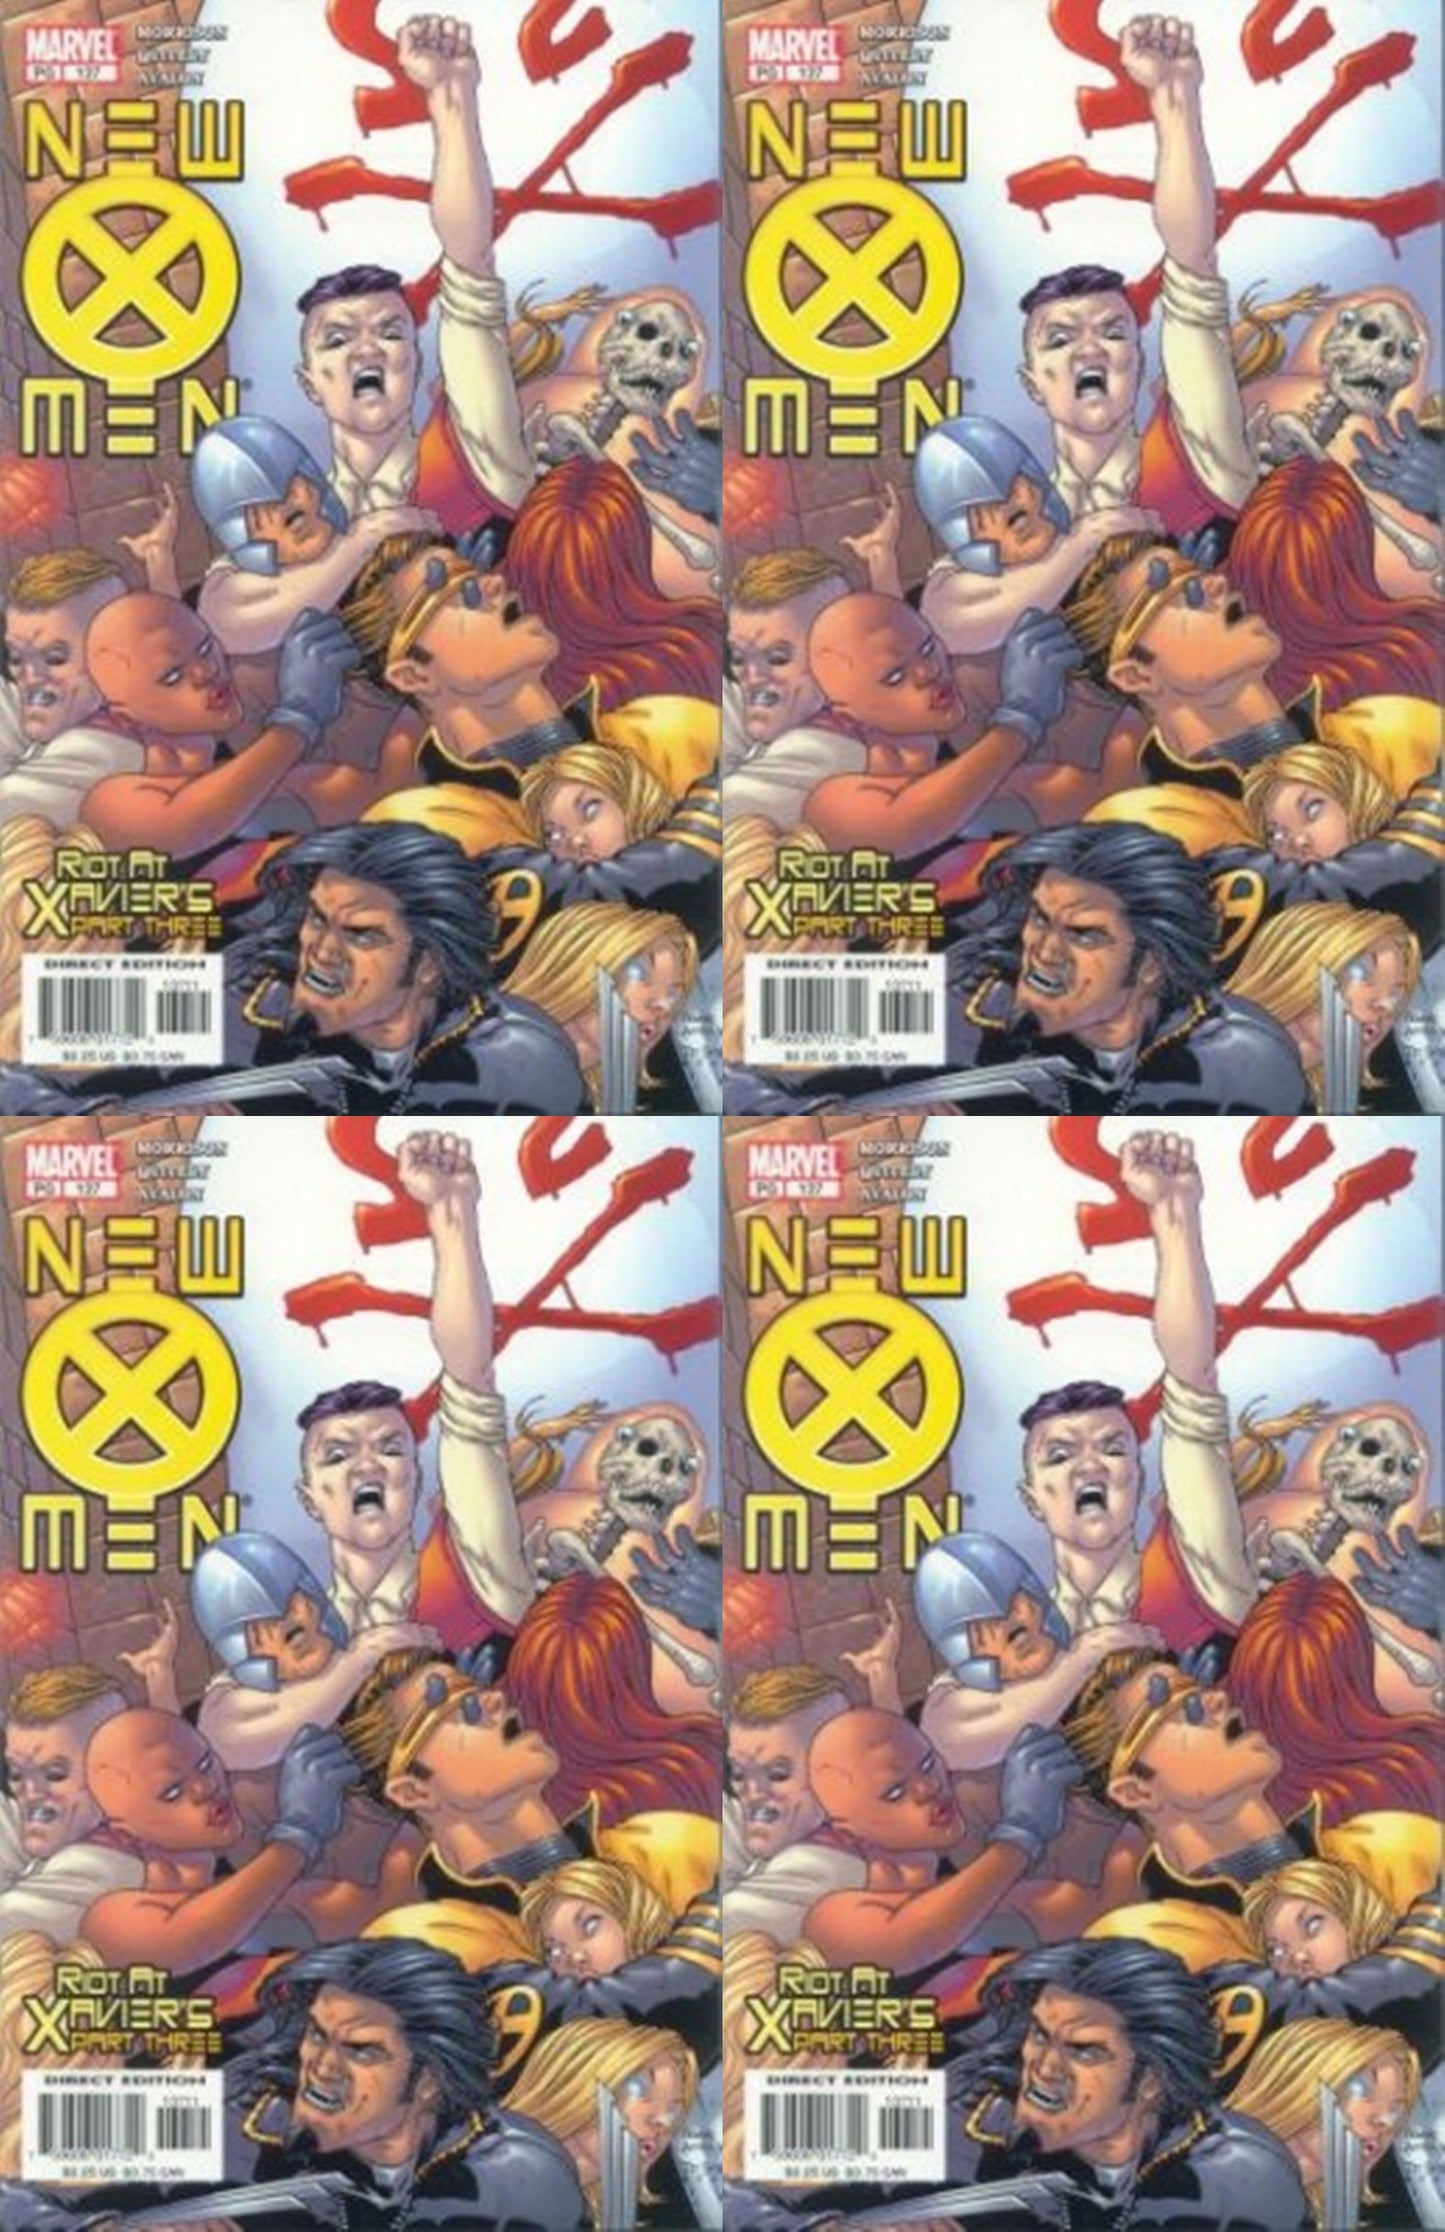 New X-Men #137 Volume 1 (2001-2004) Marvel Comics - 4 Comics